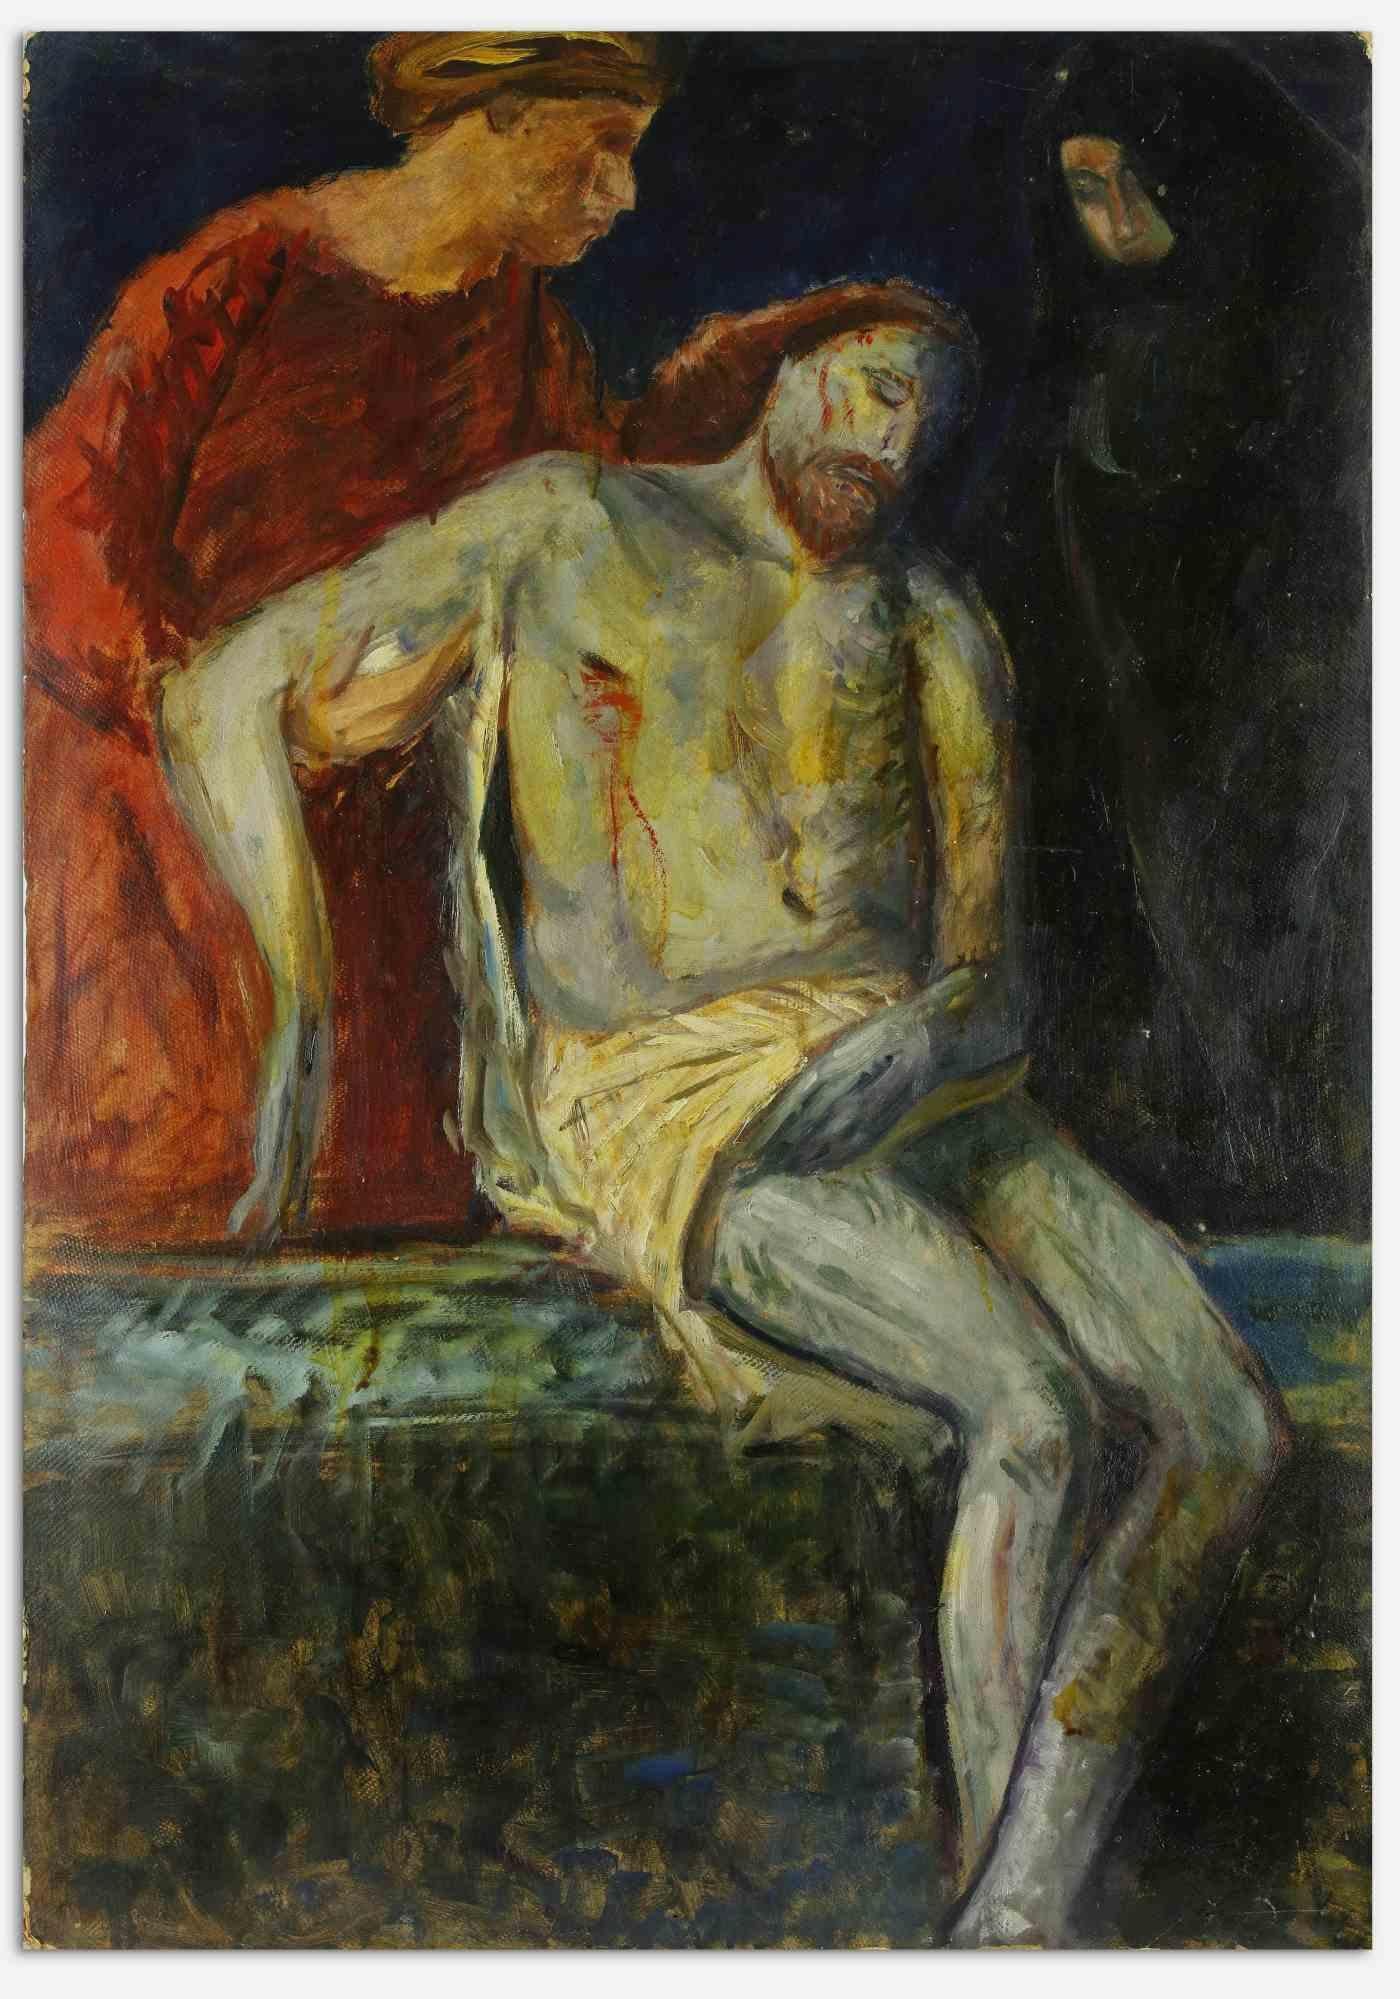 The Deposition - Peinture à l'huile sur toile d'Antonio Feltrinelli  - 1930s